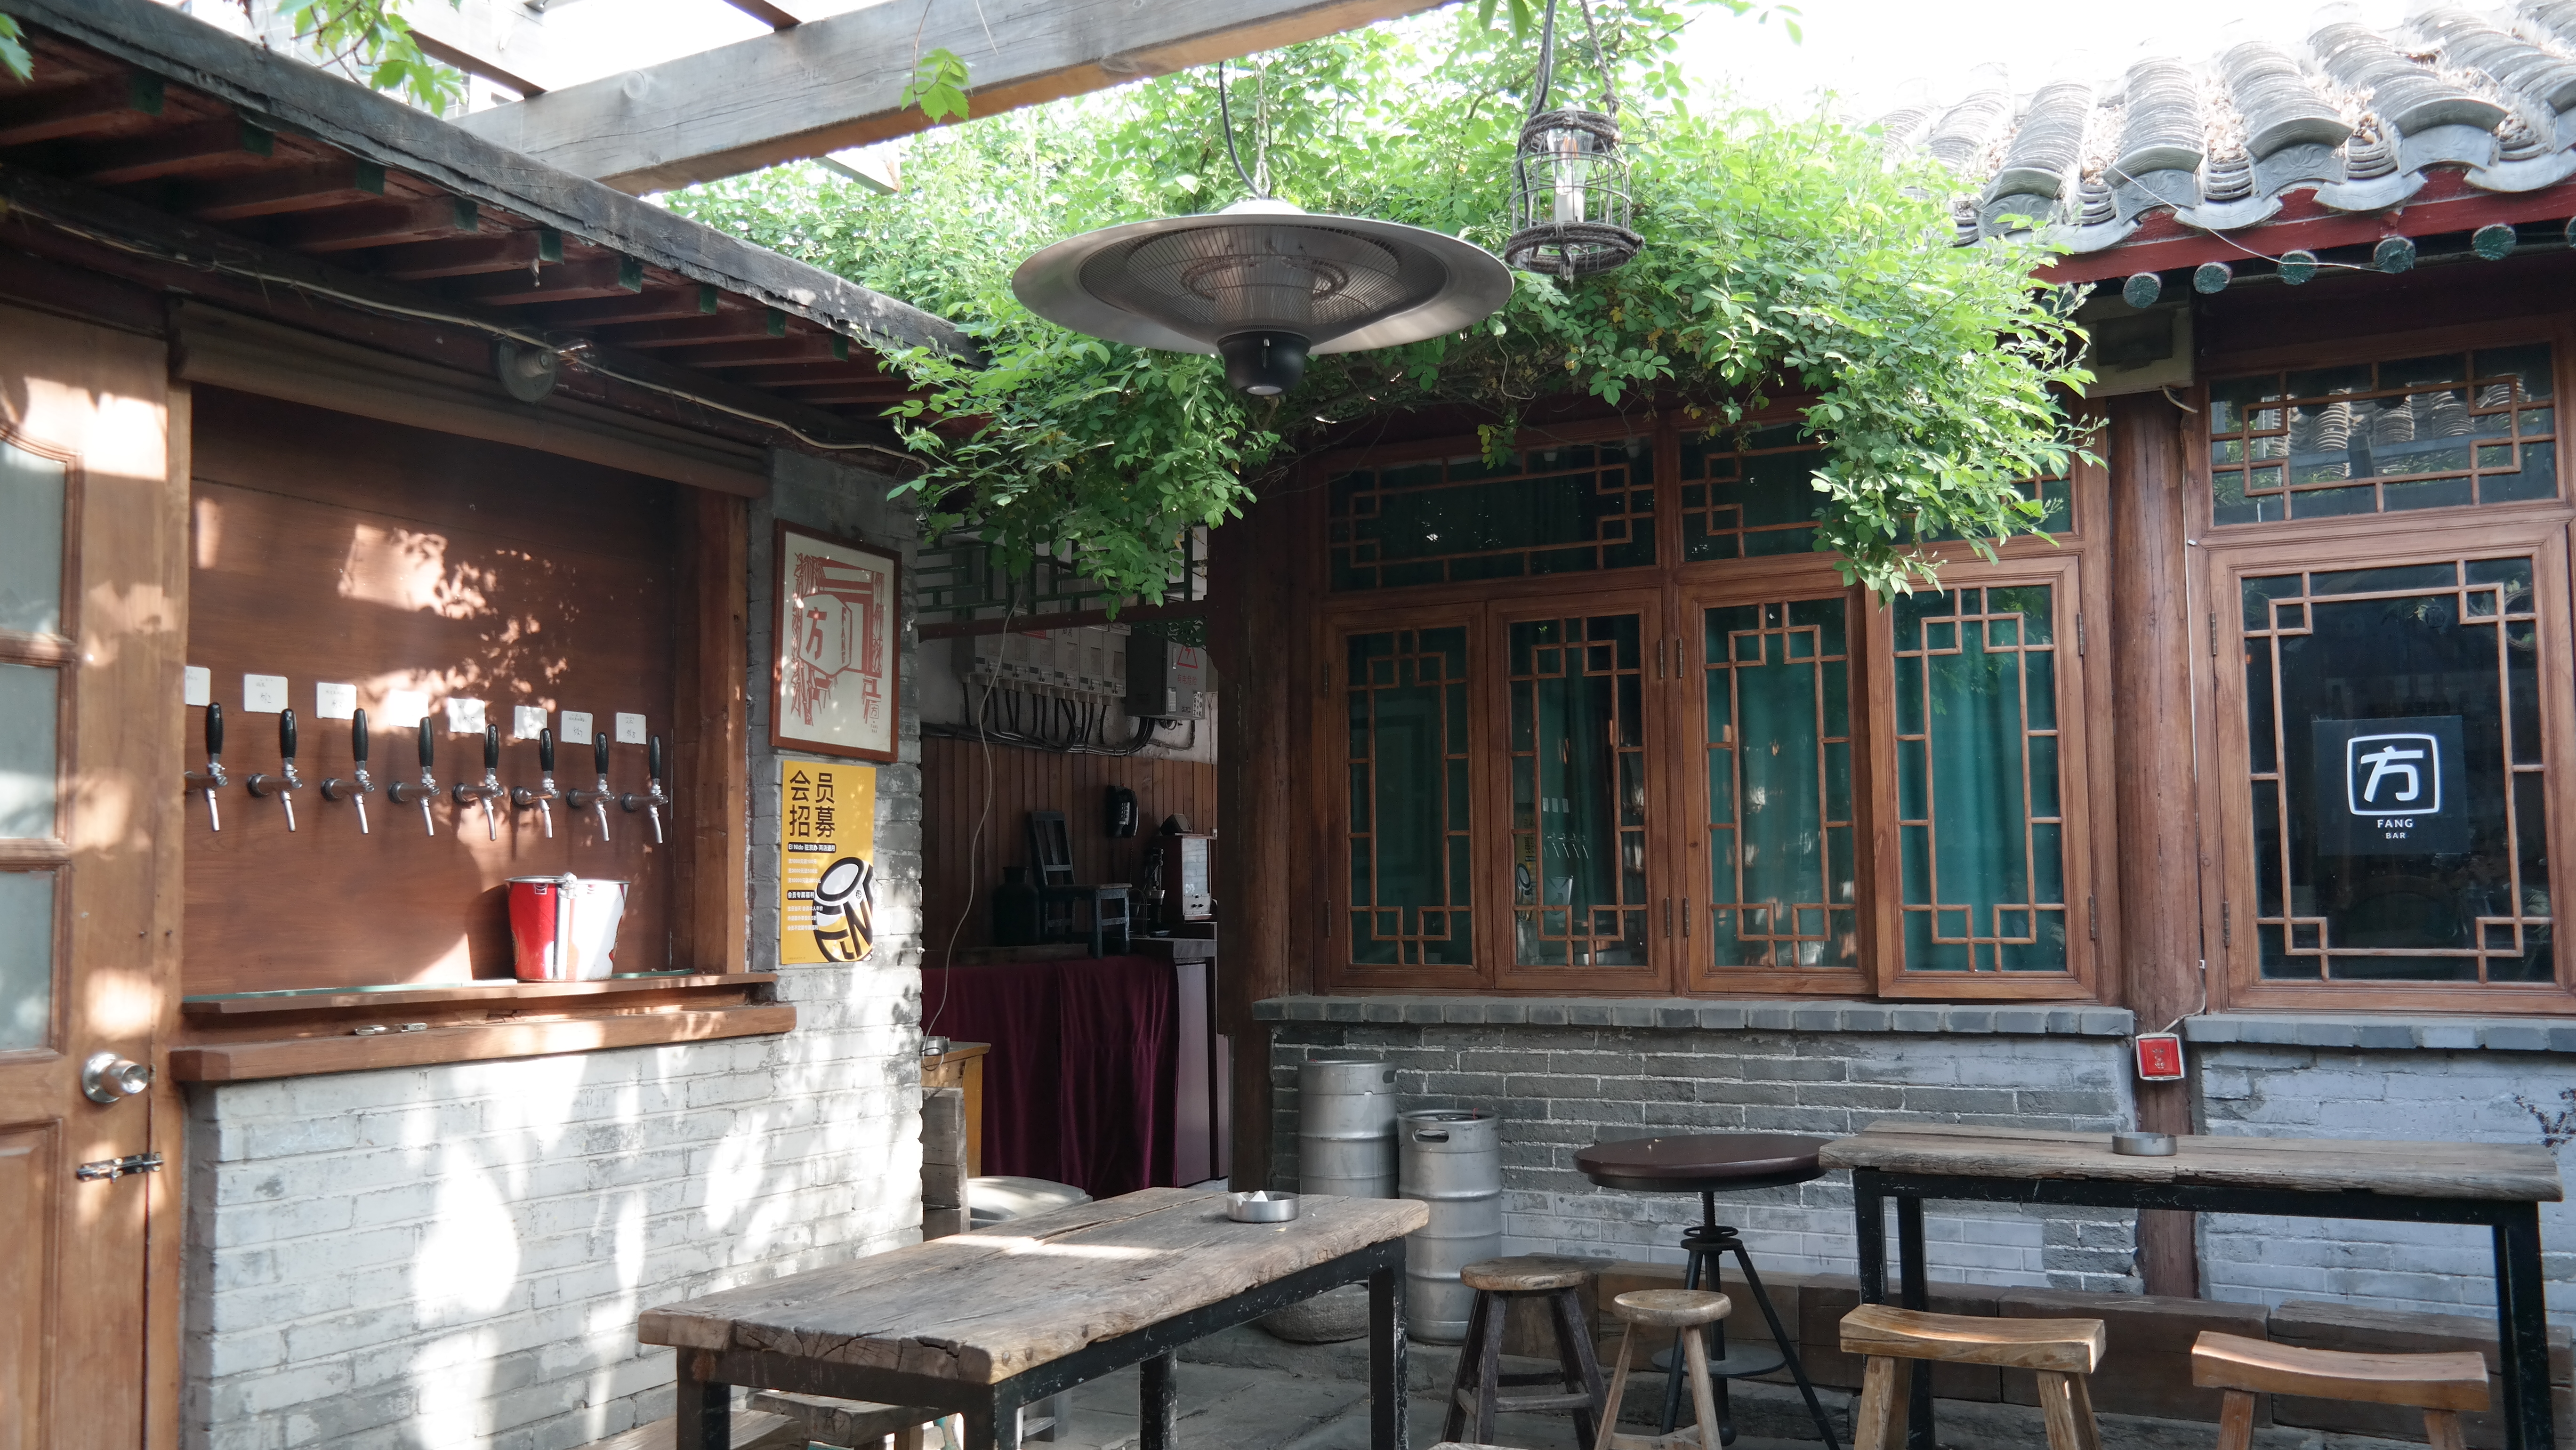 중국 베이징의 유명 수제맥주 펍 ‘엘니도’(El Nido)의 내부. 중국 전통 가옥인 사합원을 개조했다.